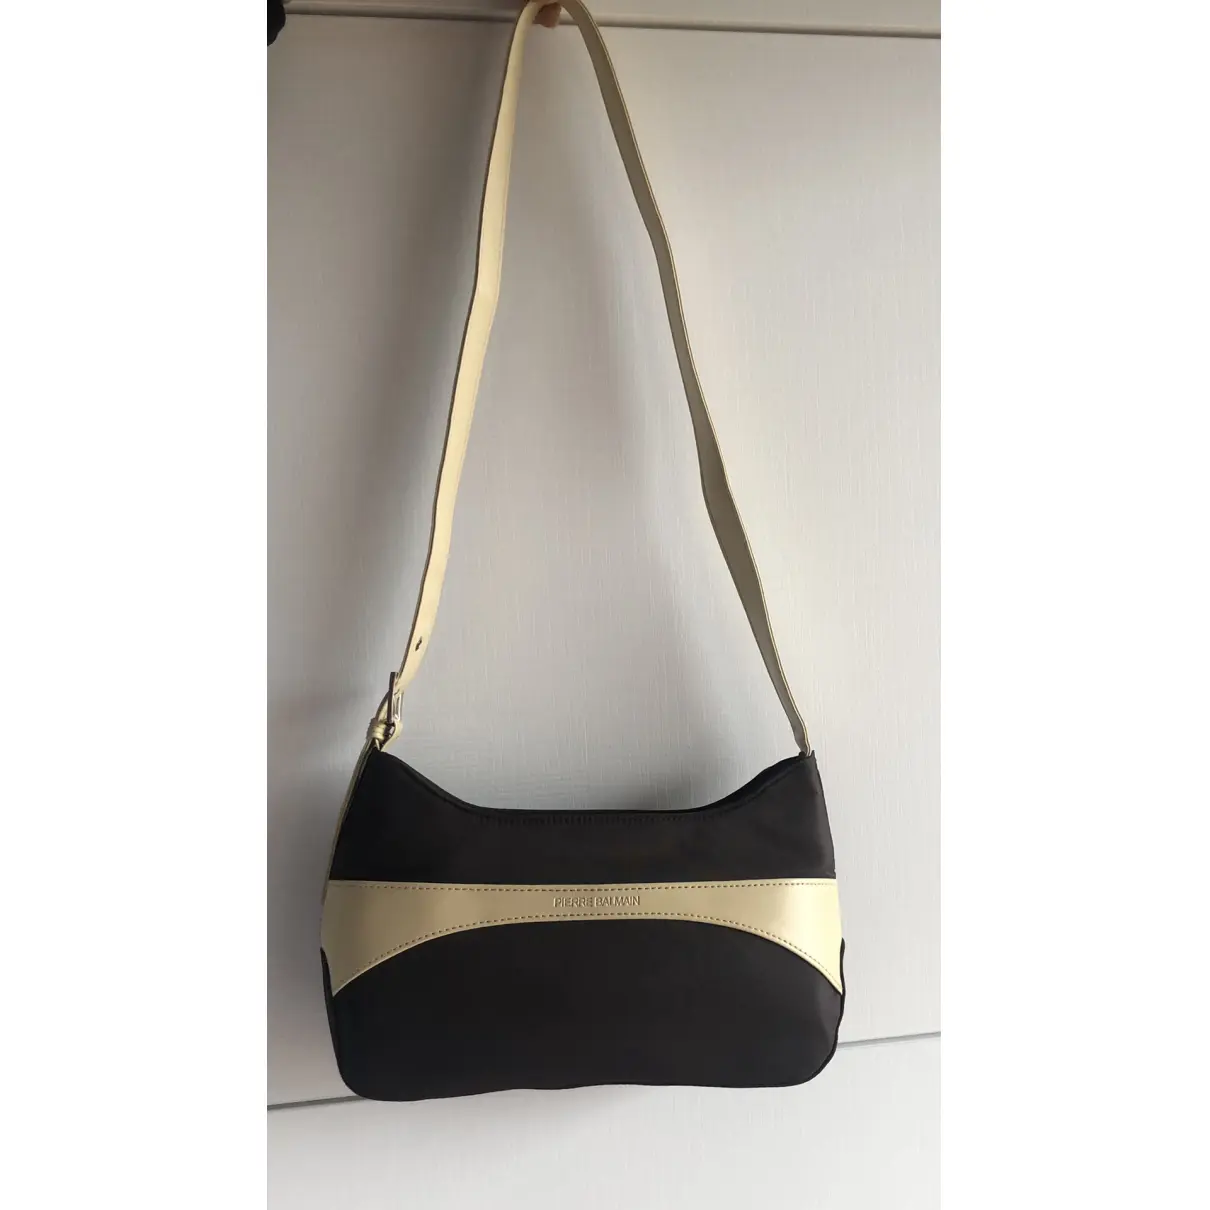 Buy Pierre Balmain Cloth handbag online